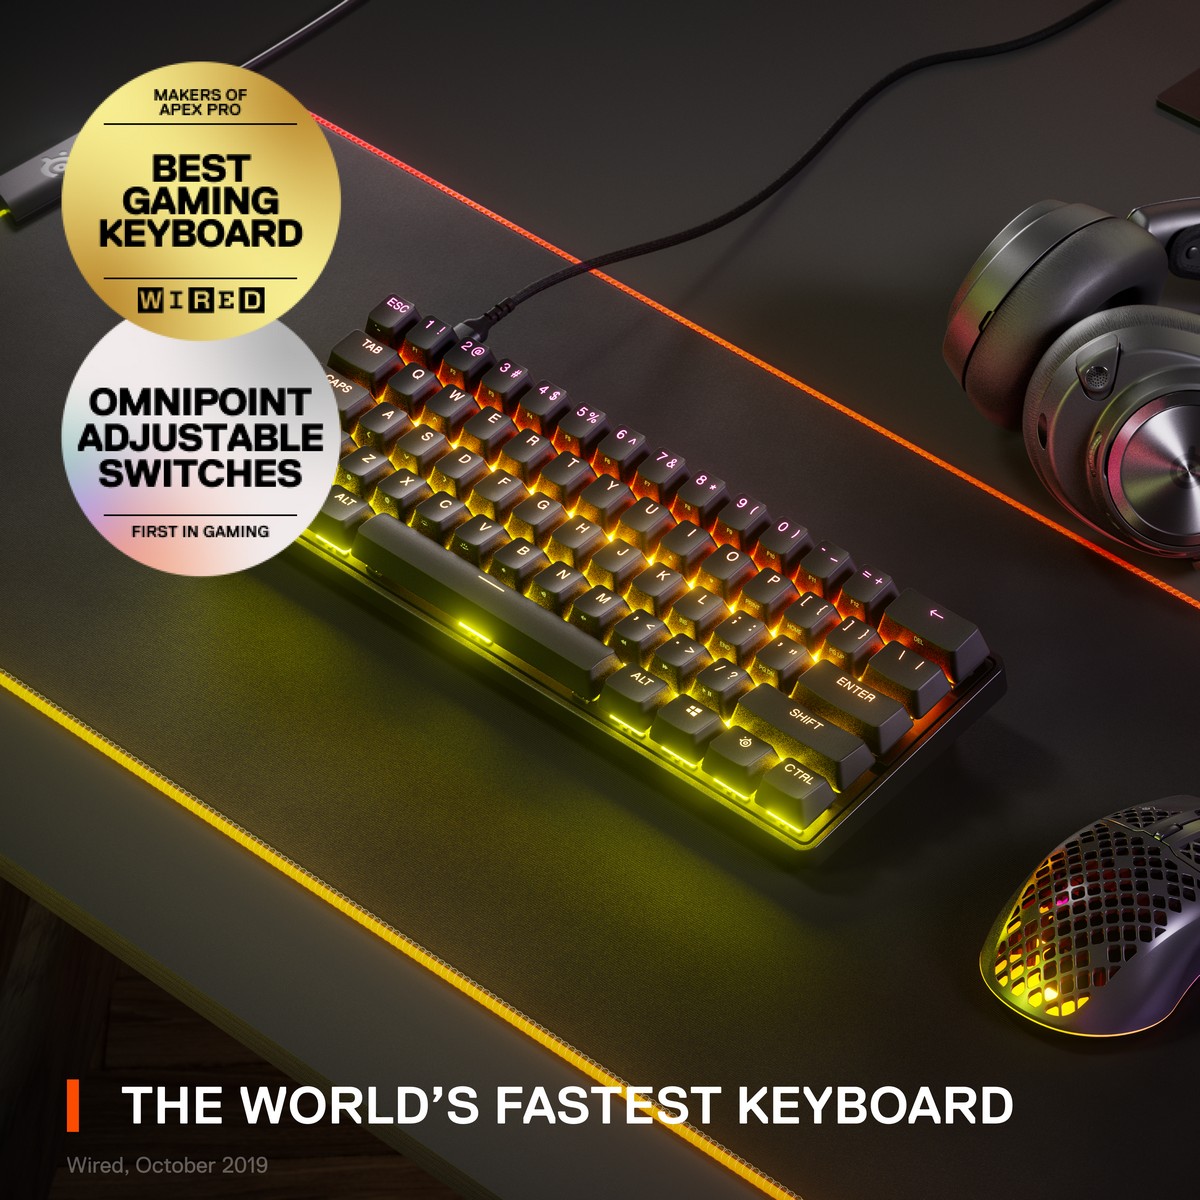 SteelSeries APEX Pro Mini 60 Mechanical Gaming Keyboard (64821)